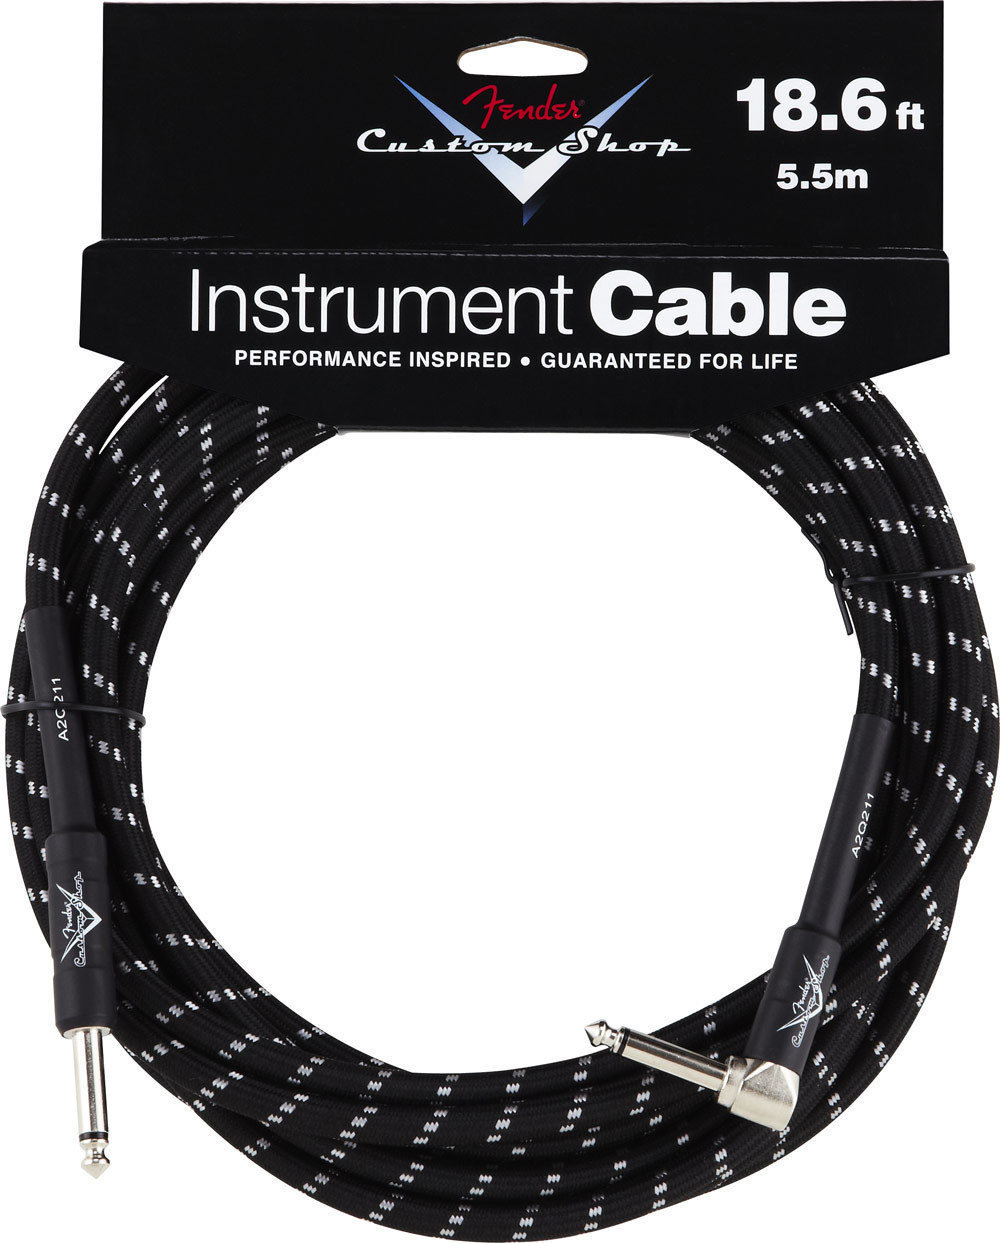 Καλώδιο Μουσικού Οργάνου Fender Custom Shop Performance Series Cable 5.5m Black Tweed Angled